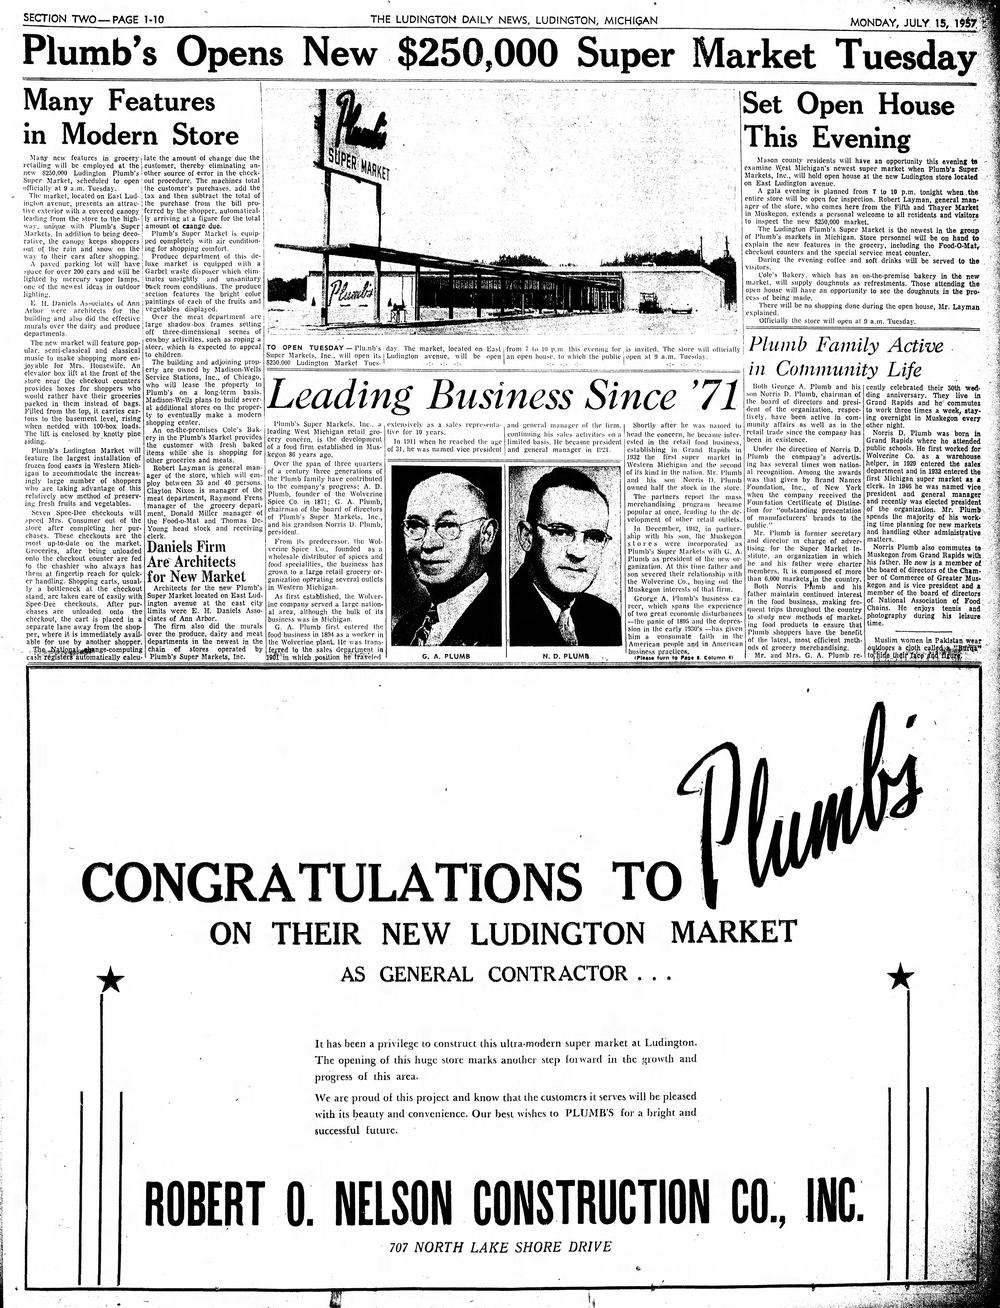 Plumbs Supermarket - Mon Jul 15 1957 Article On Opening